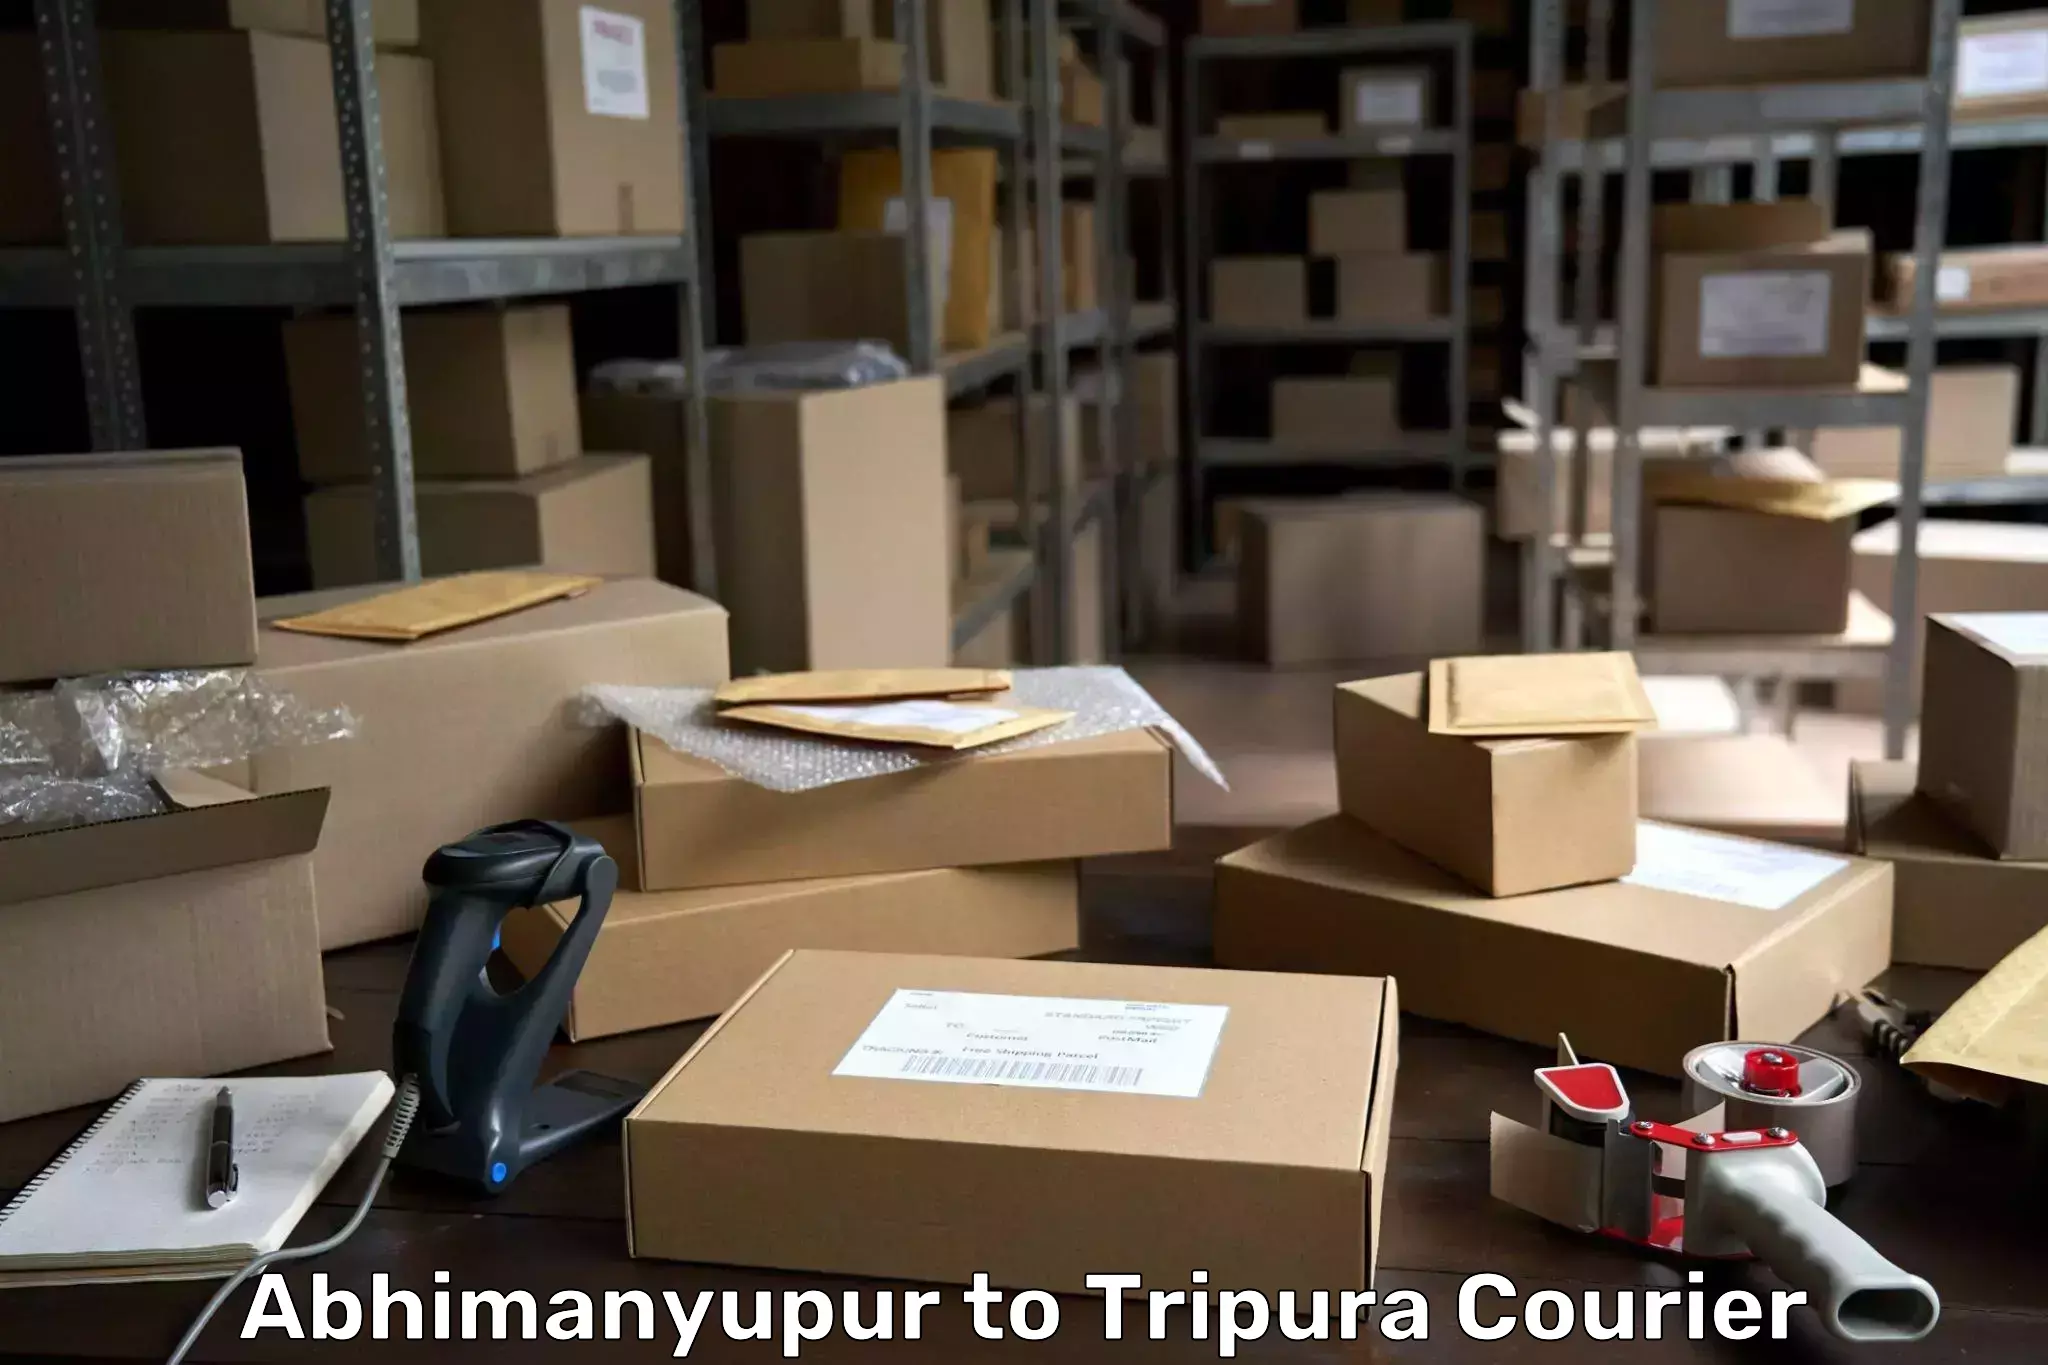 Premium courier solutions Abhimanyupur to Tripura